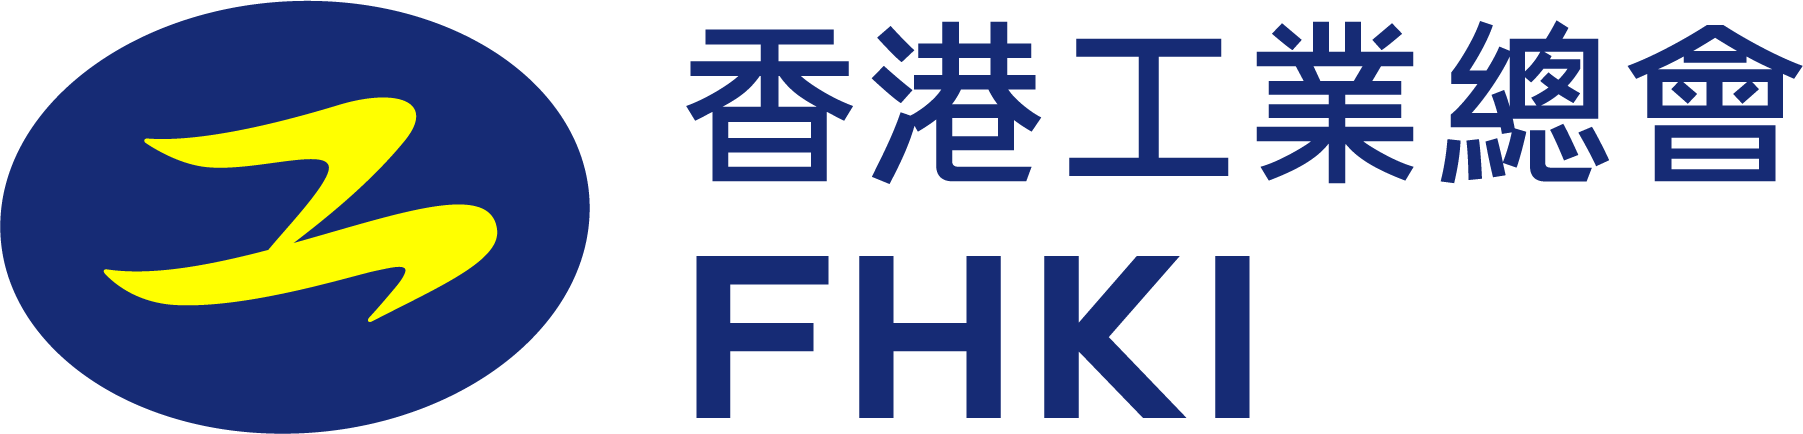 FHKI_Short_Logo_RGB